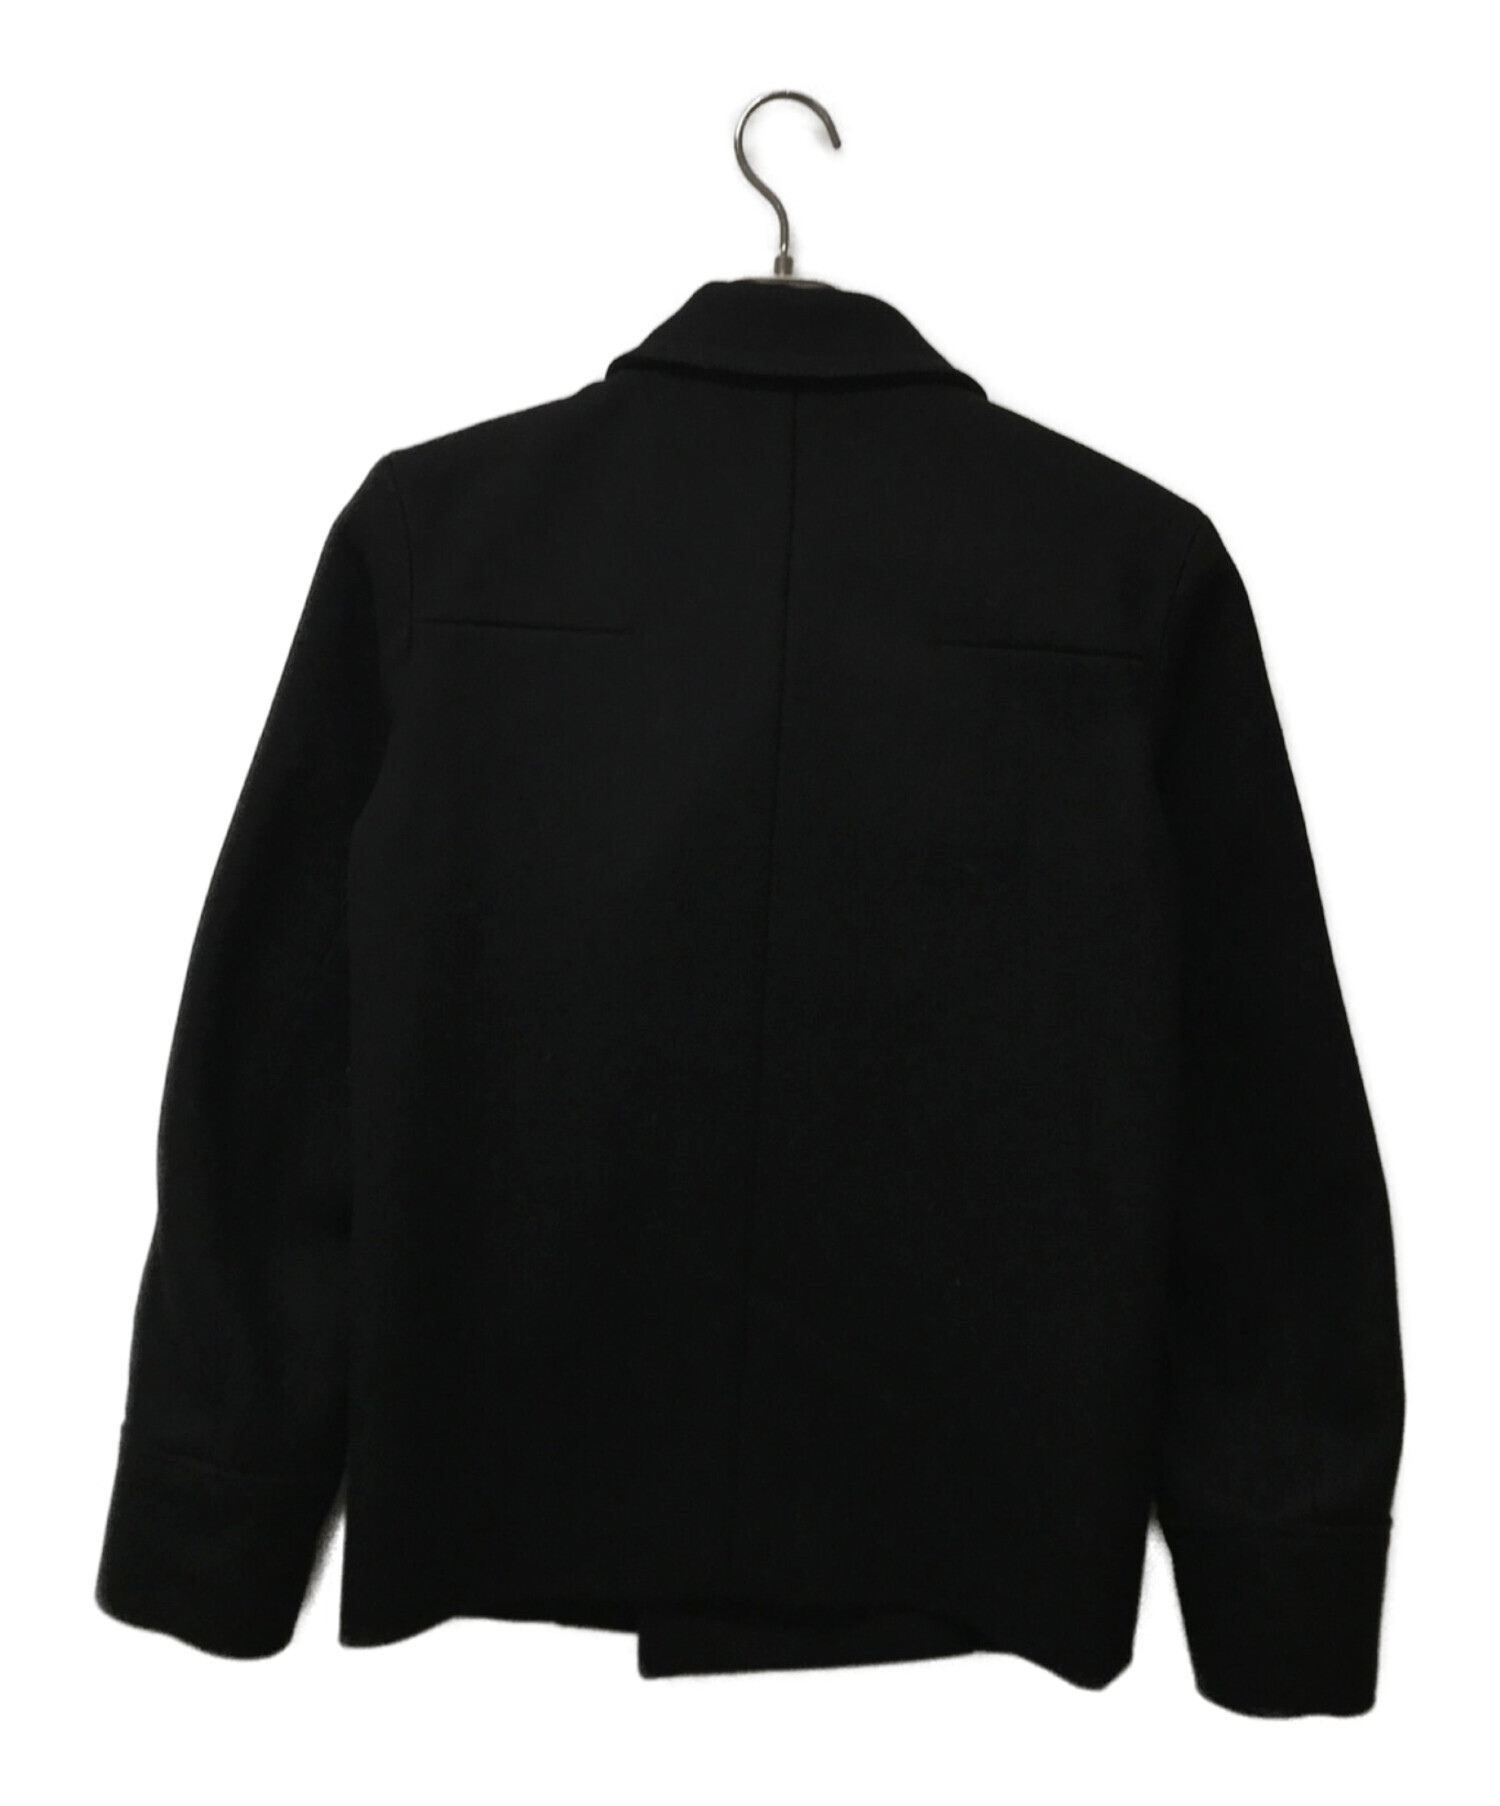 美品 ディオールオム DIOR HOMME コート ロングコート エポレット 無地 ロゴボタン ウール アウター メンズ 42(XXS相当) ブラック実寸サイズ着丈